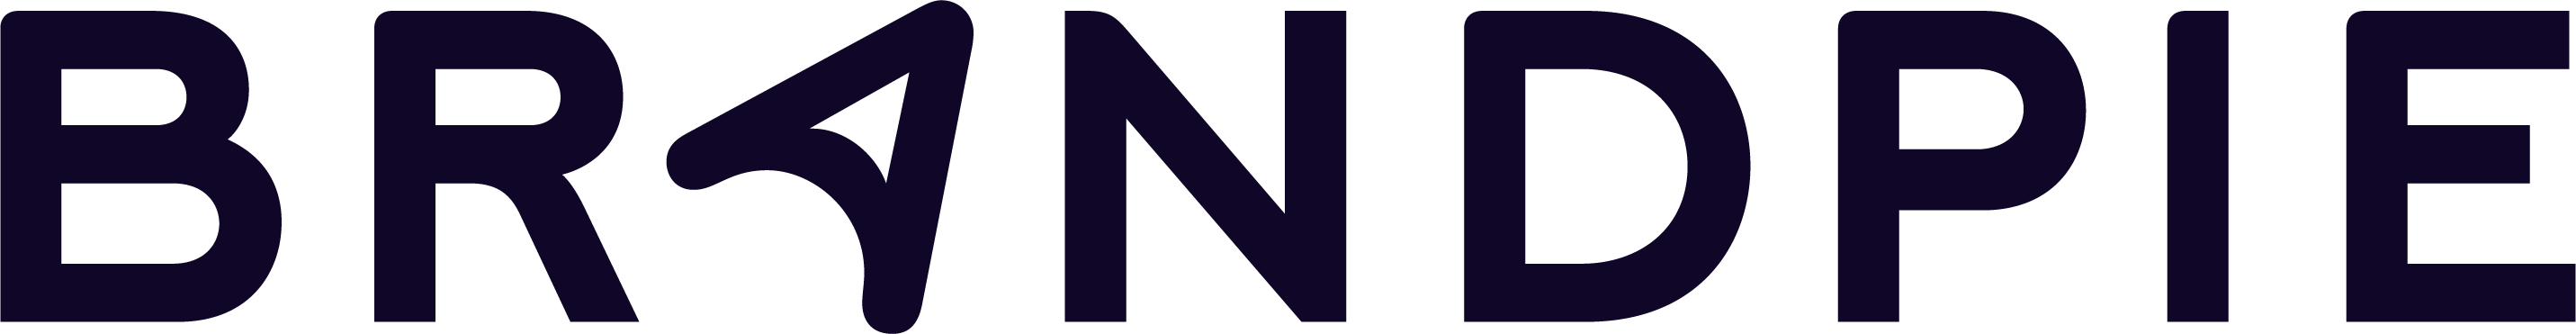 logo for Brandpie Digital Limited